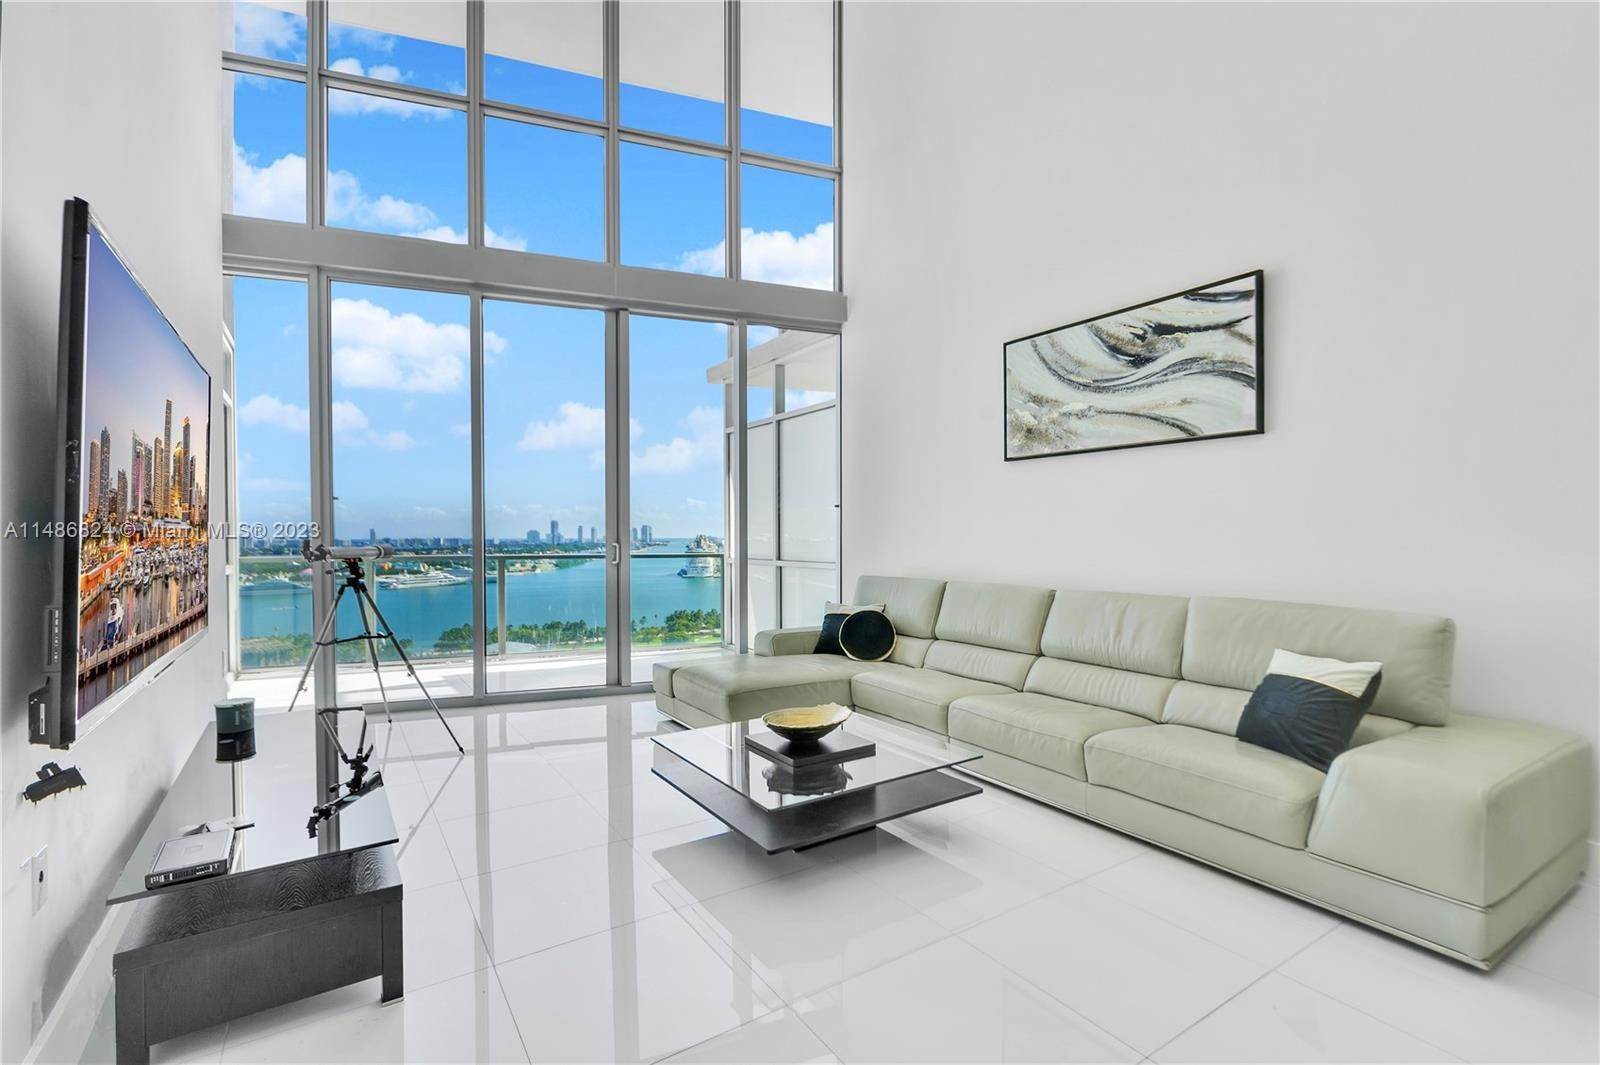 Condominium for Sale at Miami, FL 33132